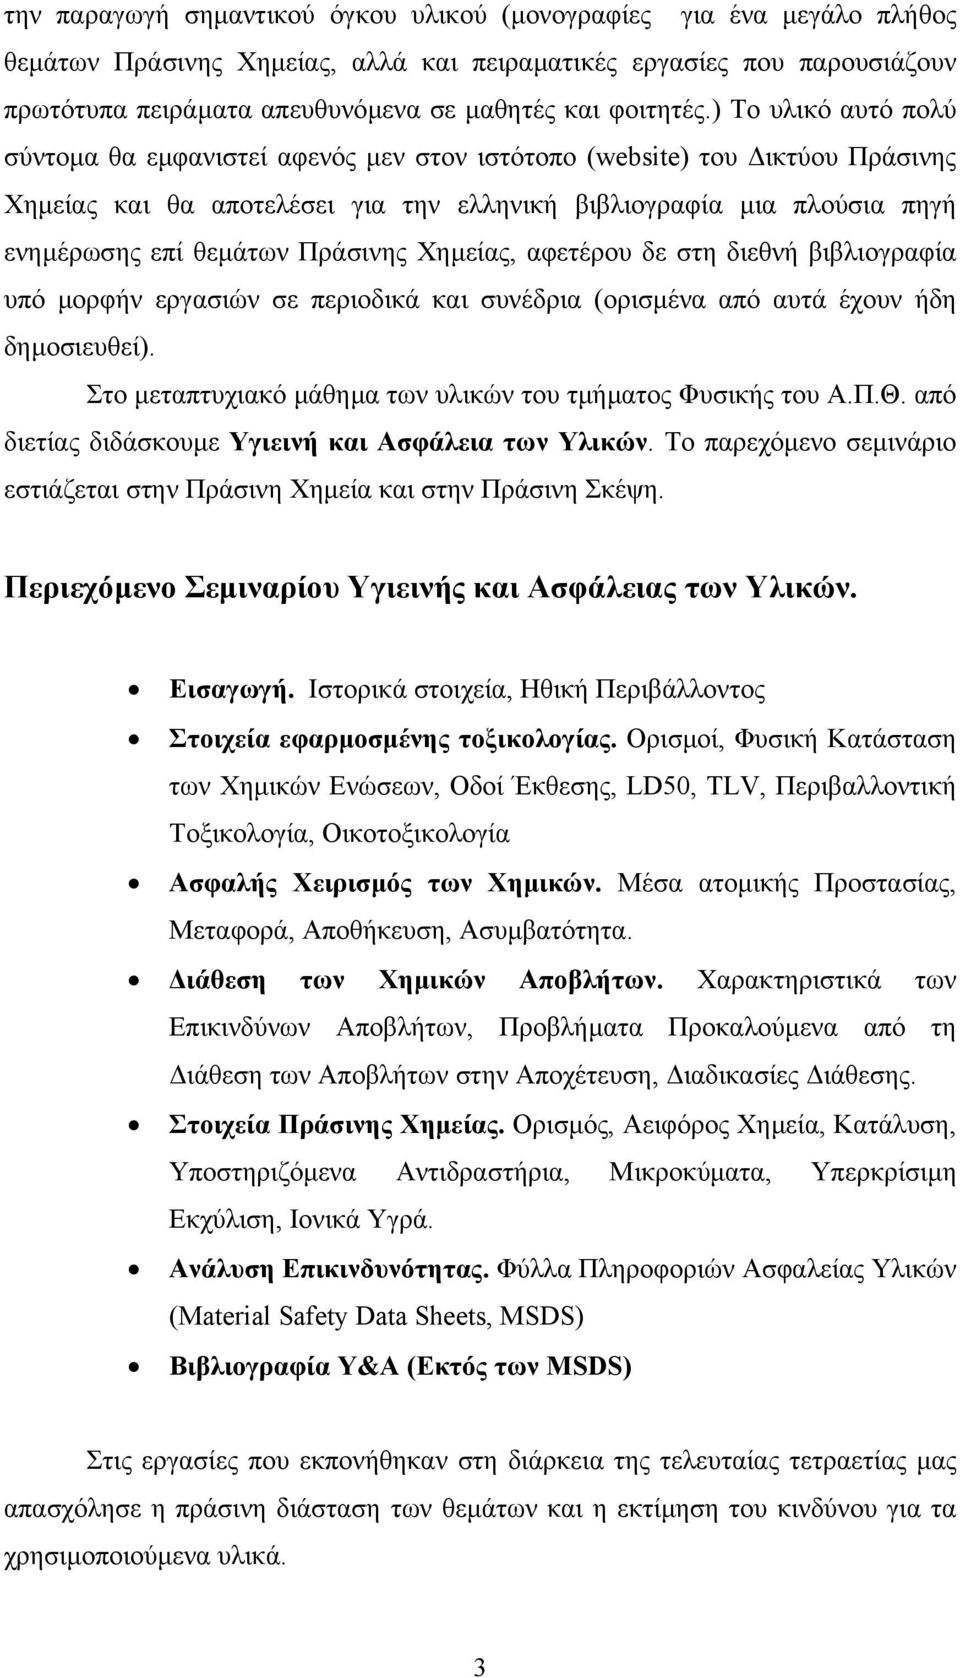 ) Το υλικό αυτό πολύ σύντοµα θα εµφανιστεί αφενός µεν στον ιστότοπο (website) του ικτύου Πράσινης Χηµείας και θα αποτελέσει για την ελληνική βιβλιογραφία µια πλούσια πηγή ενηµέρωσης επί θεµάτων